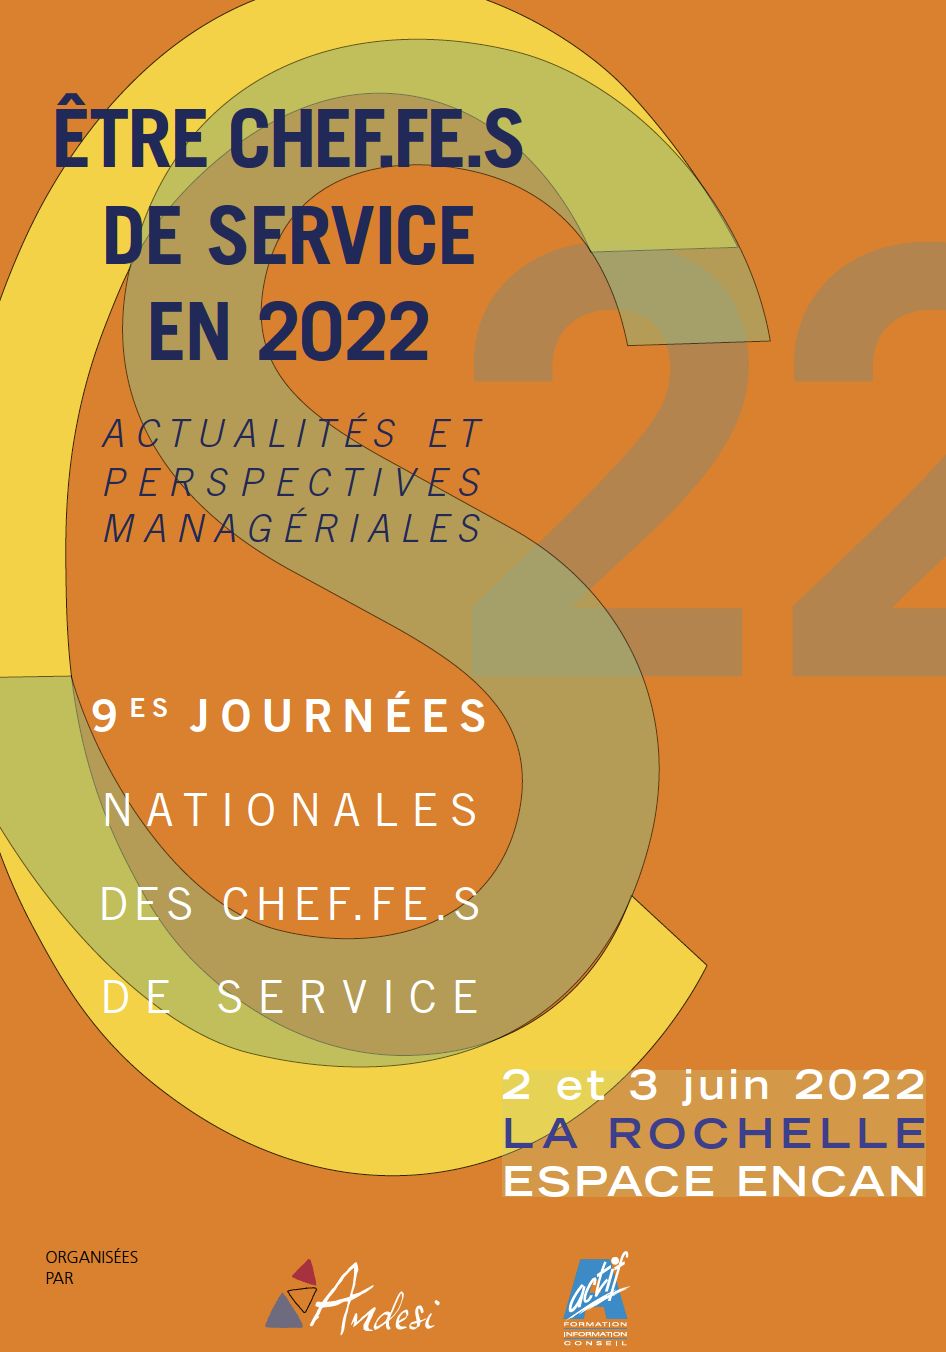 La Rochelle 2 et 3 juin 2022